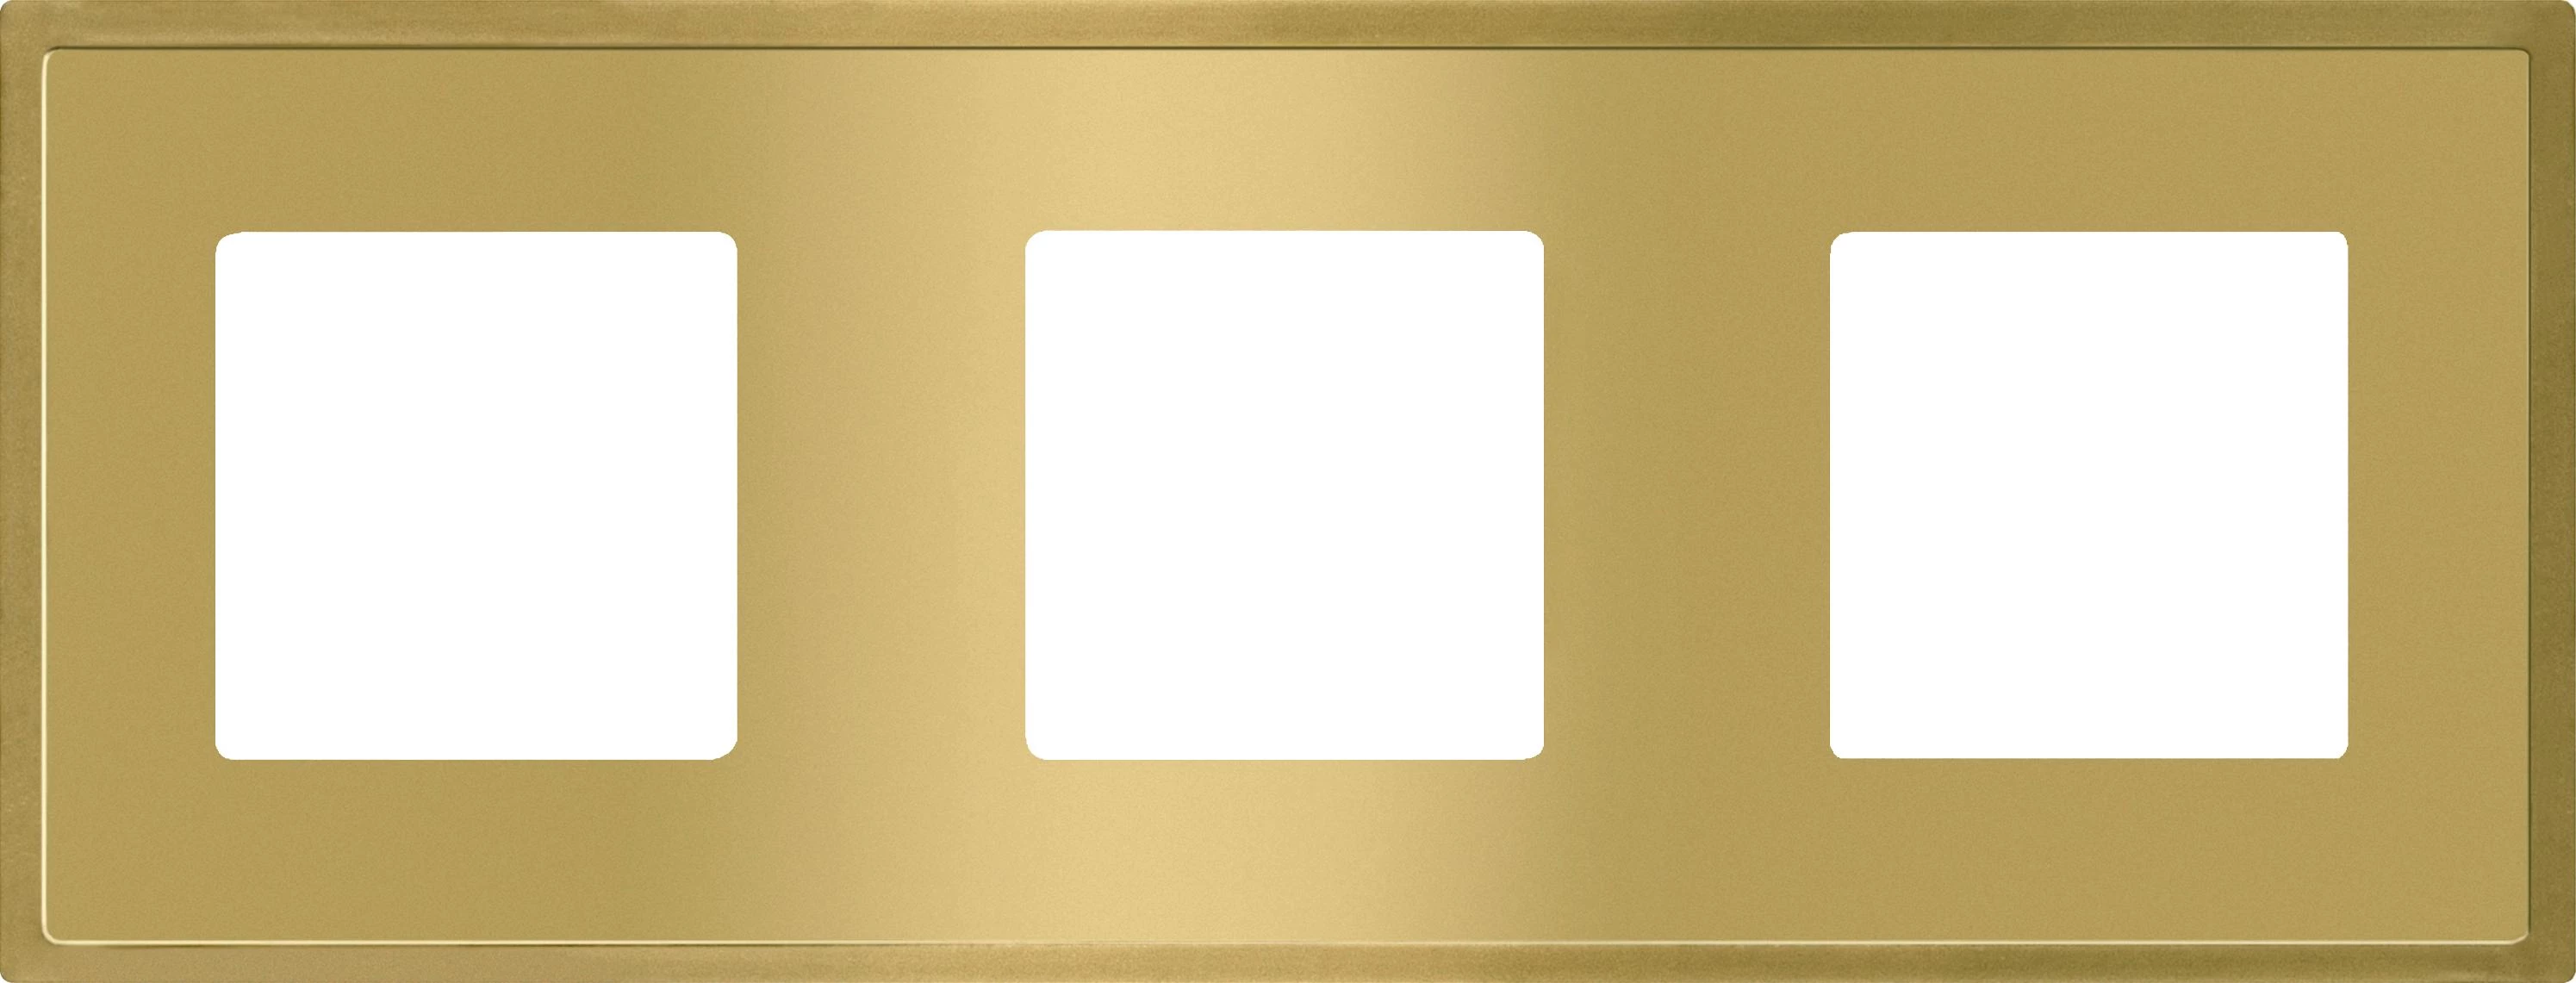  артикул FD01243OB название Рамка тройная, цвет Светлое золото, Madrid, Fede